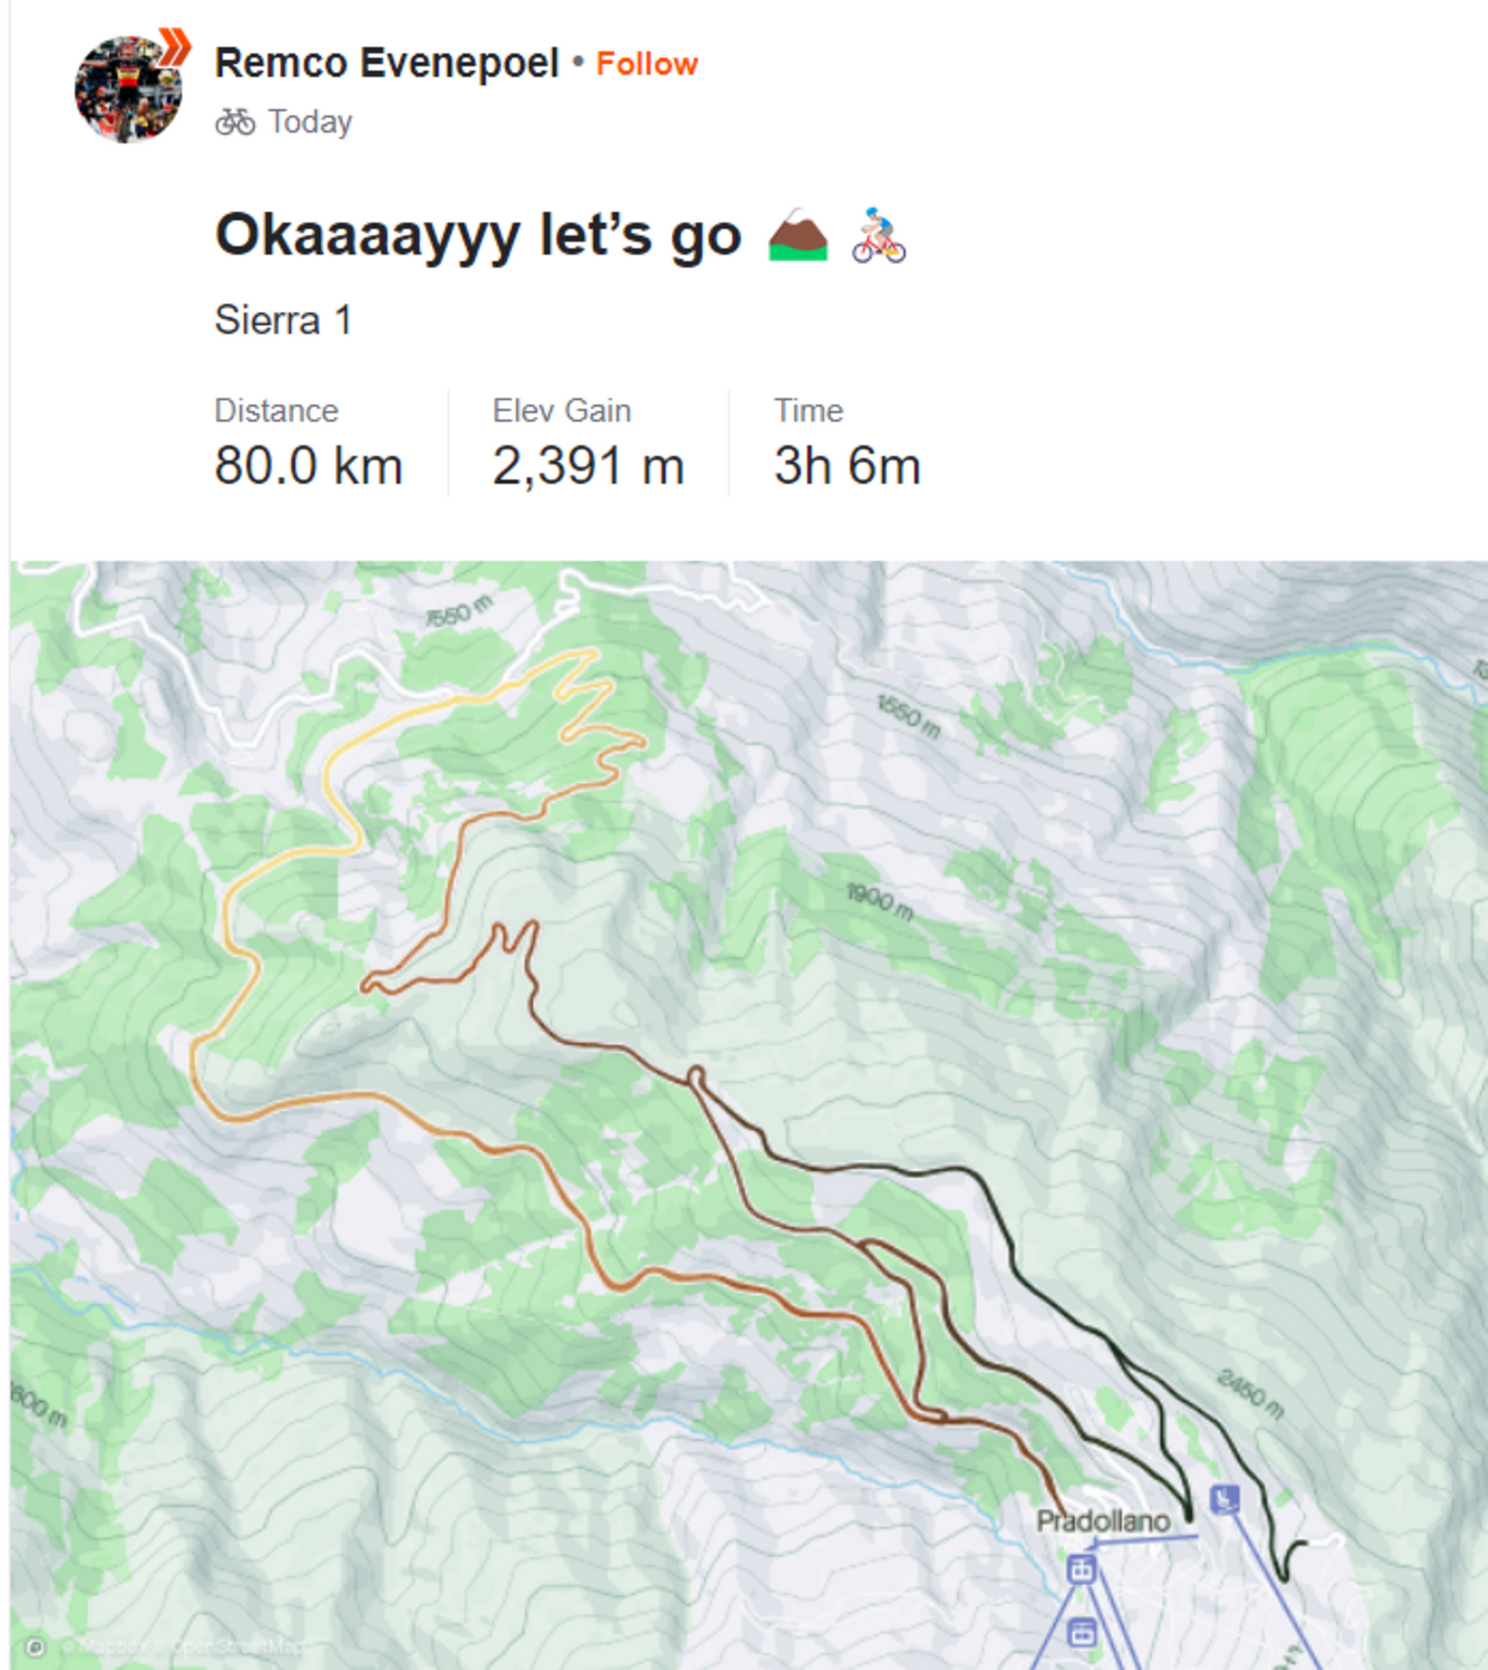 El brutal entrenamiento de Remco Evenepoel en Sierra Nevada, pensando en el Tour de Francia